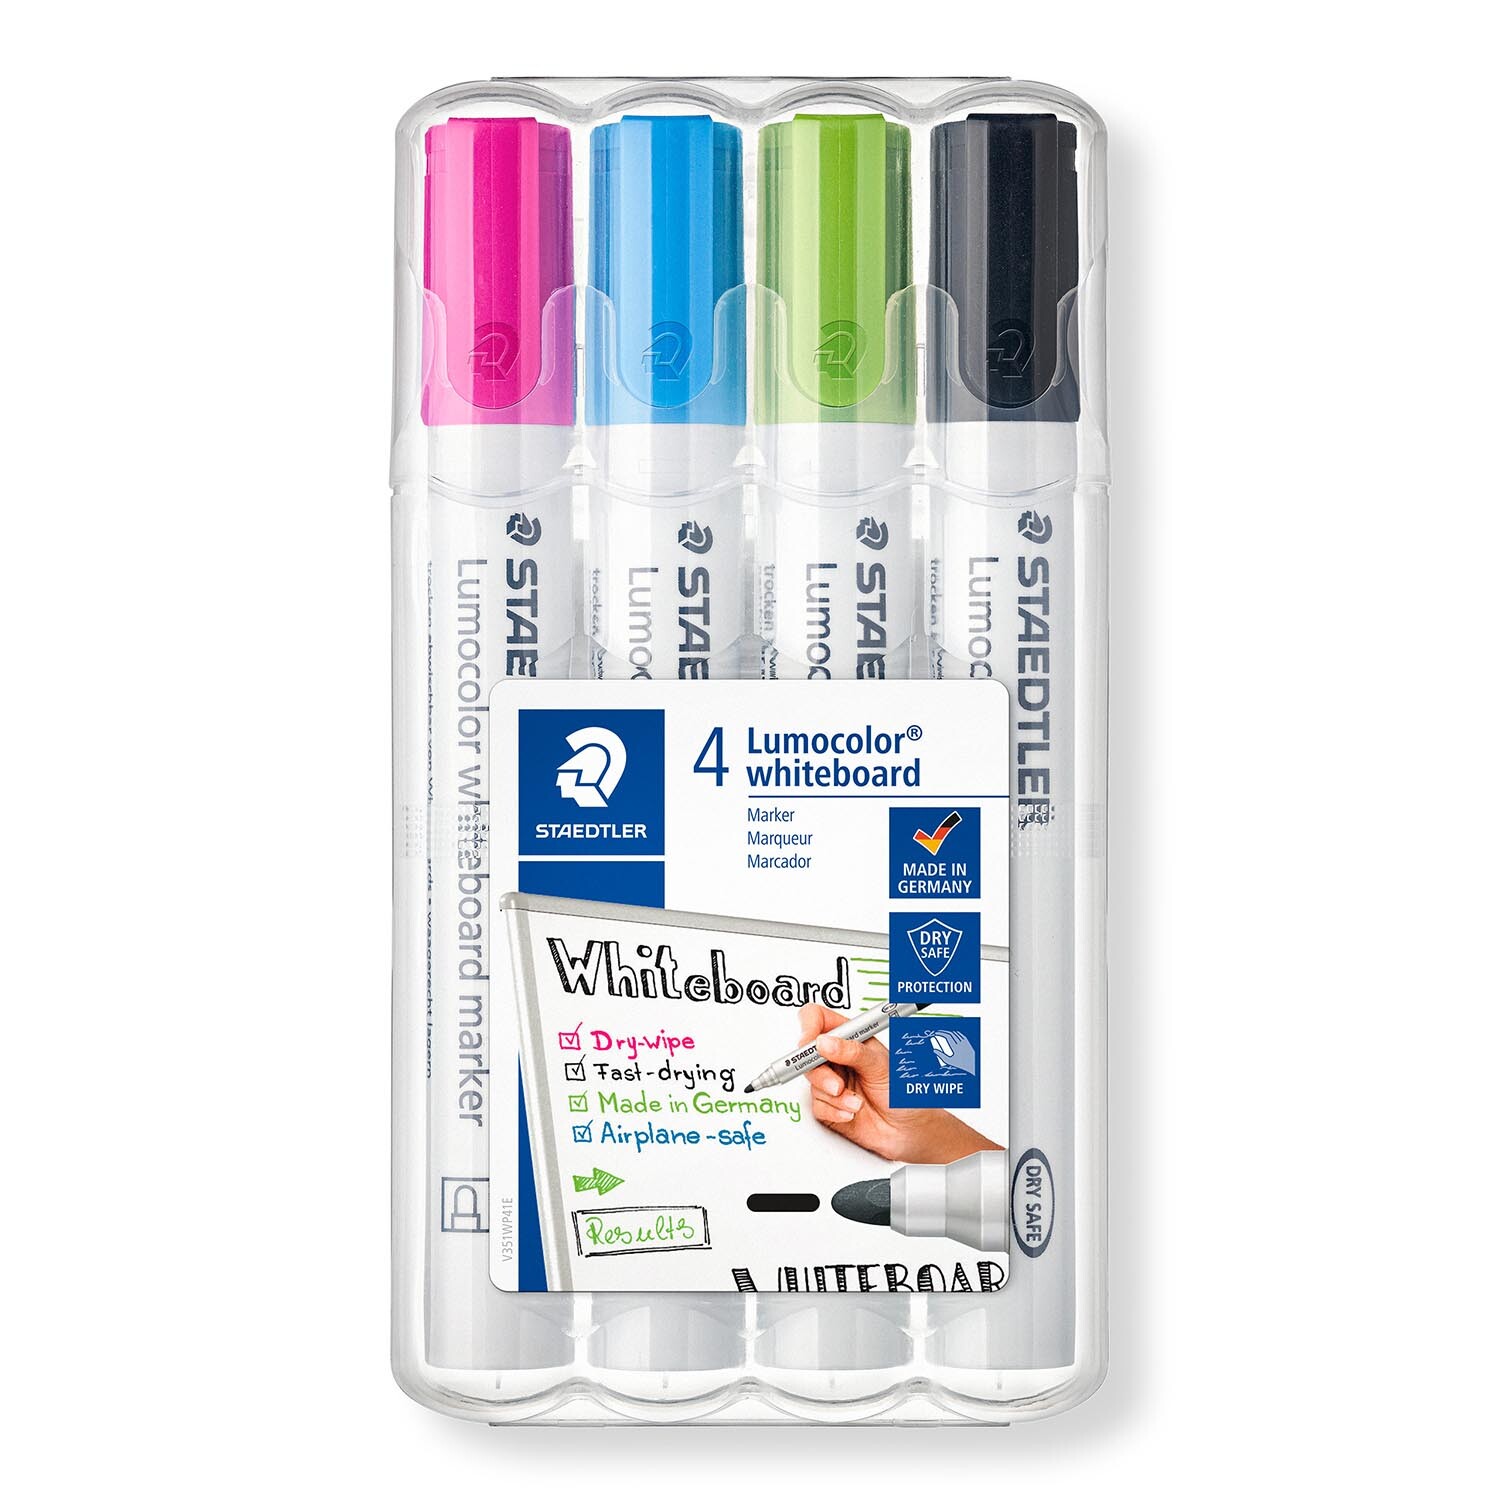 Staedtler Lumocolor Whiteboard Marker Pen 4 Pack Image 1